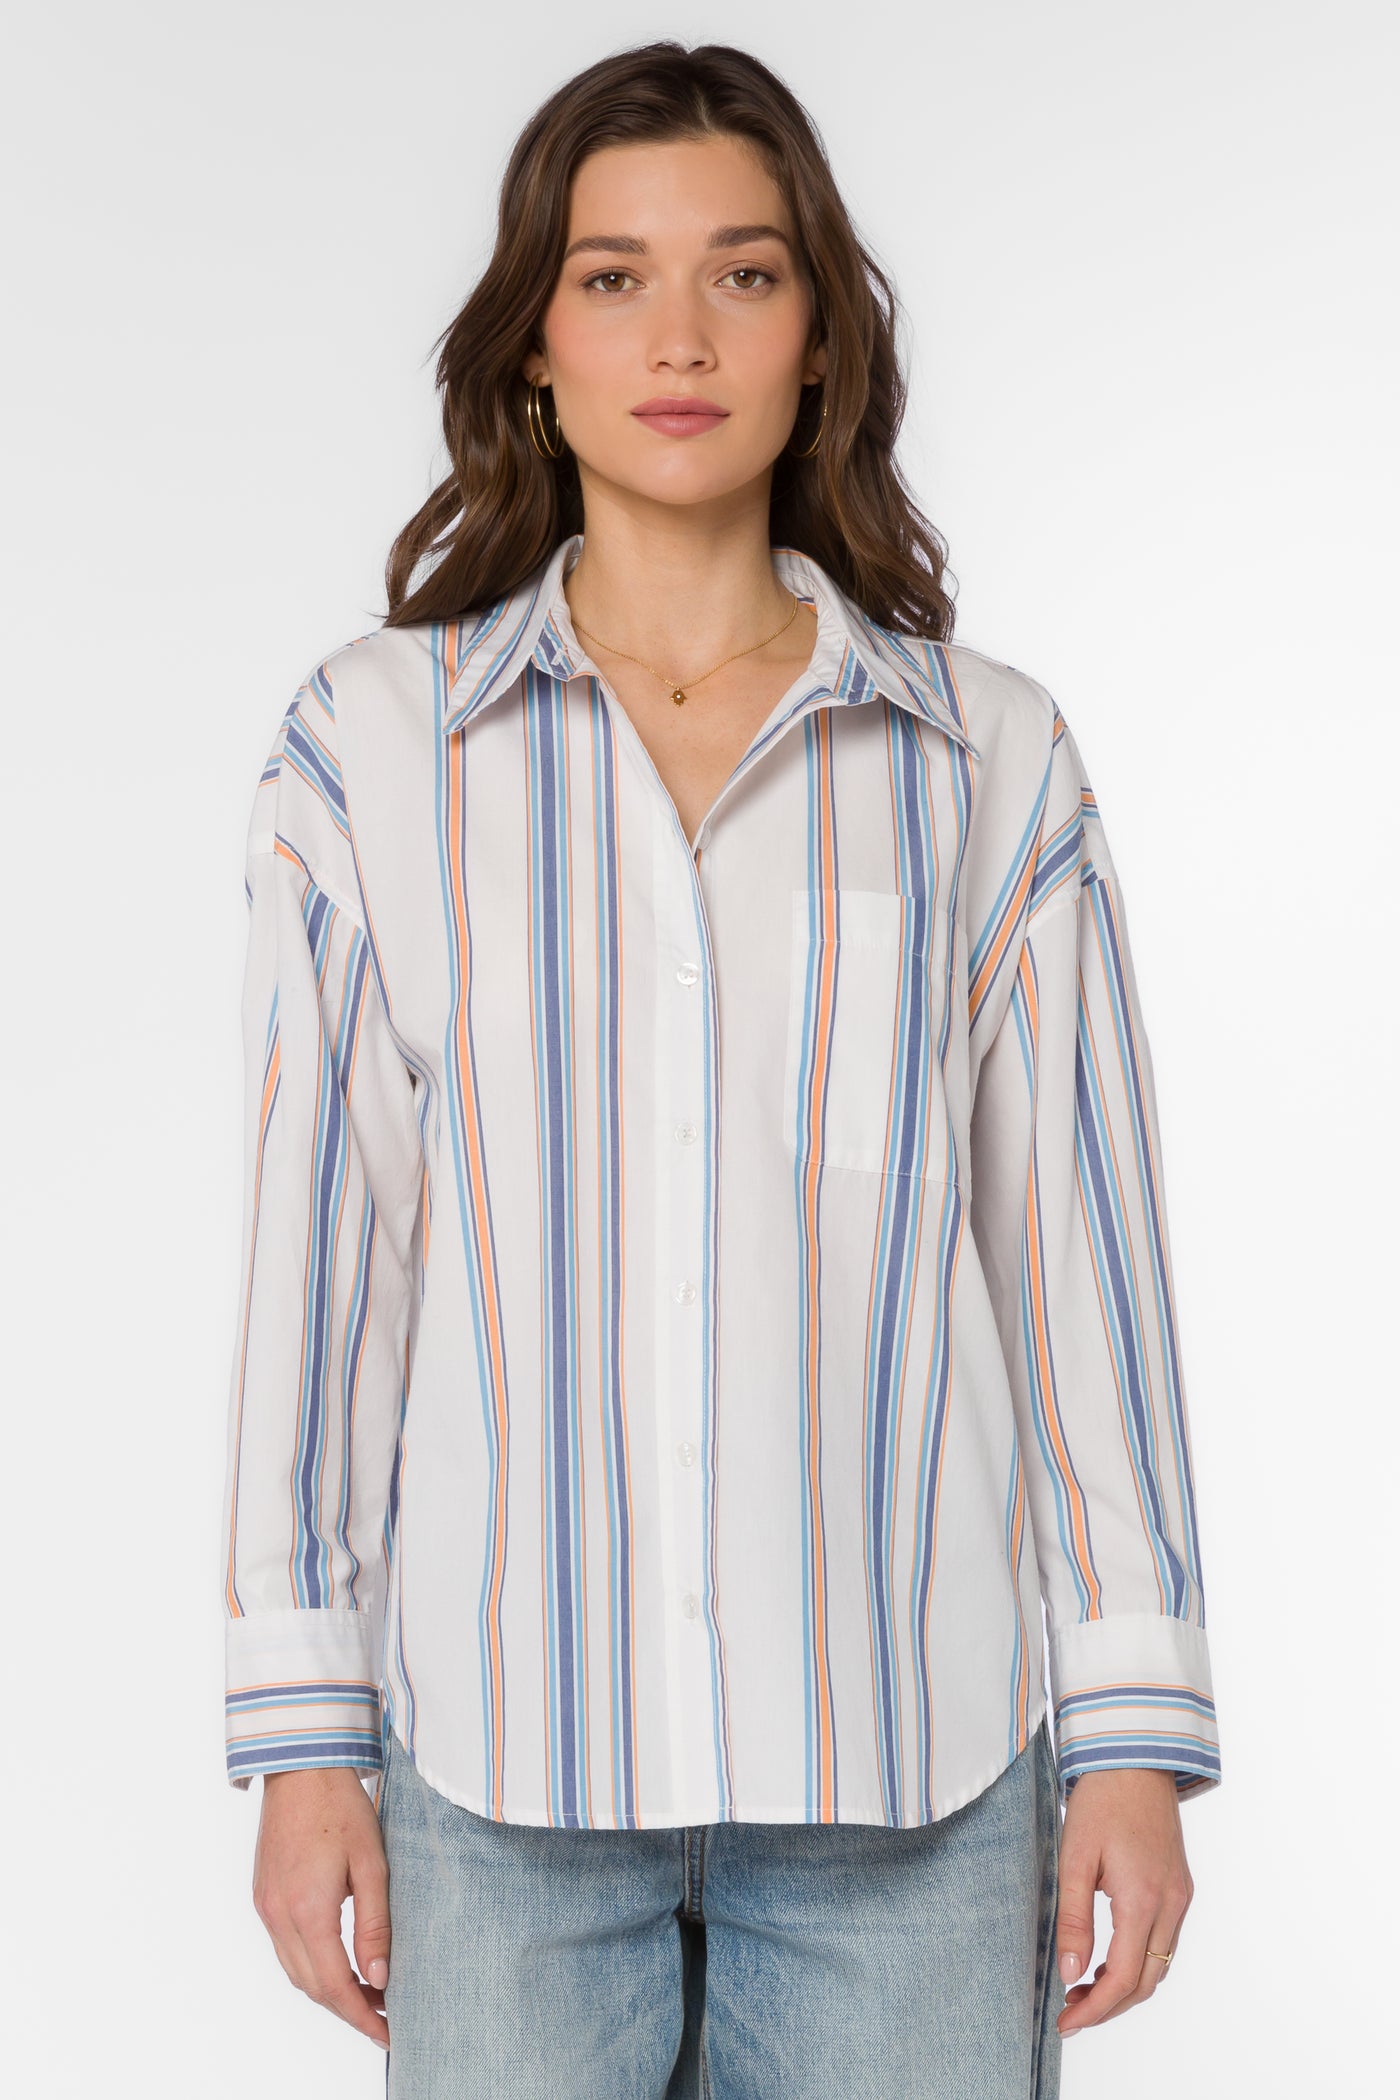 Mitch Blue Stripe Shirt - Tops - Velvet Heart Clothing